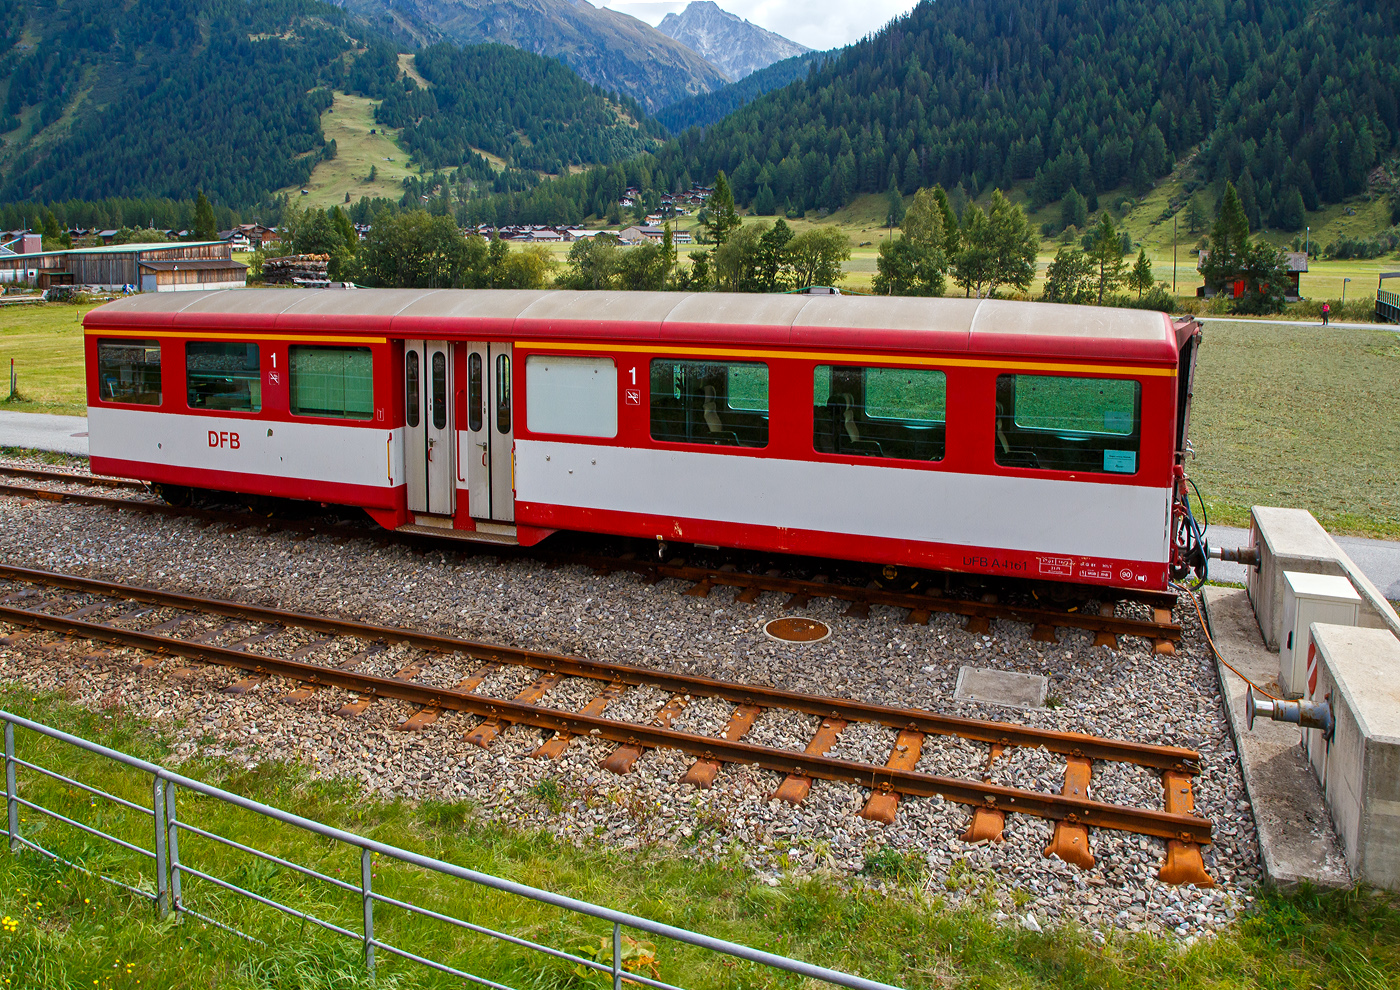 Der vierachsige Personenwagen A 4161 der DFB Dampfbahn Furka-Bergstrecke AG, ex MGB A 2061, ex BVZ A 2061, ein Mitteleinstiegswagen der 1. Klasse noch in MGB Lackierung, ist am 07 September 2021 in Oberwald (Wallis) abgestellt, aufgenommen aus einem fahrenden MGB-Zug heraus. Aktuell ist der Wagen frisch lackiert als DFB Infowagen A 4161 im Bahnhof Oberwald abgestellt (als Provisorium Oberwald, trgt er denVermerk darf den Bhf. Oberwald nicht Verlassen). 

Der Wagen wurde 1961 von SIG (Schweizerische Industrie-Gesellschaft) in Neuhausen am Rheinfall gebaut und an die damalige BVZ (Brig-Visp-Zermatt-Bahn / BVZ Zermatt-Bahn) als A 2061 geliefert. Nach dem Zusammenschuss am 01. Januar 2003 der BVZ mit der Furka-Oberalp-Bahn (FO) zur Matterhorn-Gotthard-Bahn wurde er zum MGB A 2061, im Jahr 2016 ging er dann an die DFB. 

TECHNISCHE DATEN
Hersteller: SIG
Baujahr: 1961
Spurweite: 1.000 mm (Meterspur)
Anzahl der Achsen 4 (2´2´)
Lnge ber Puffer : 15.780 mm
Lnge des Wagenkastens: 14.900 mm
Breite: 2.656 mm
Hhe: 3.365 mm
Drehzapfenabstand: 11.010 mm
Achsabstand im Drehgestell: 1.800 mm
Laufraddurchmesser: 675 mm
Bremszahnrad: System Abt  (Drehgestell Seite Visp/Talseite)
Eigengewicht:  11,8 t 
Ladegewicht:  3 t
Zul. Hchstgeschwindigkeit: 90 km/h
Anzahl der Fenster (1.400 mm breit): 6 (WC-Seite) bzw. 7
Sitzpltze: 34 und 2 Klappsitze
Stehpltze: 6
Lichte Trbreite: 2 x 610 mm
Toiletten: 1
Heizung: Zugsammelschiene RhB/MGB
Bremsen: automatische Vakuum- und Handbremse
Zulassungen: MGB und RhB
